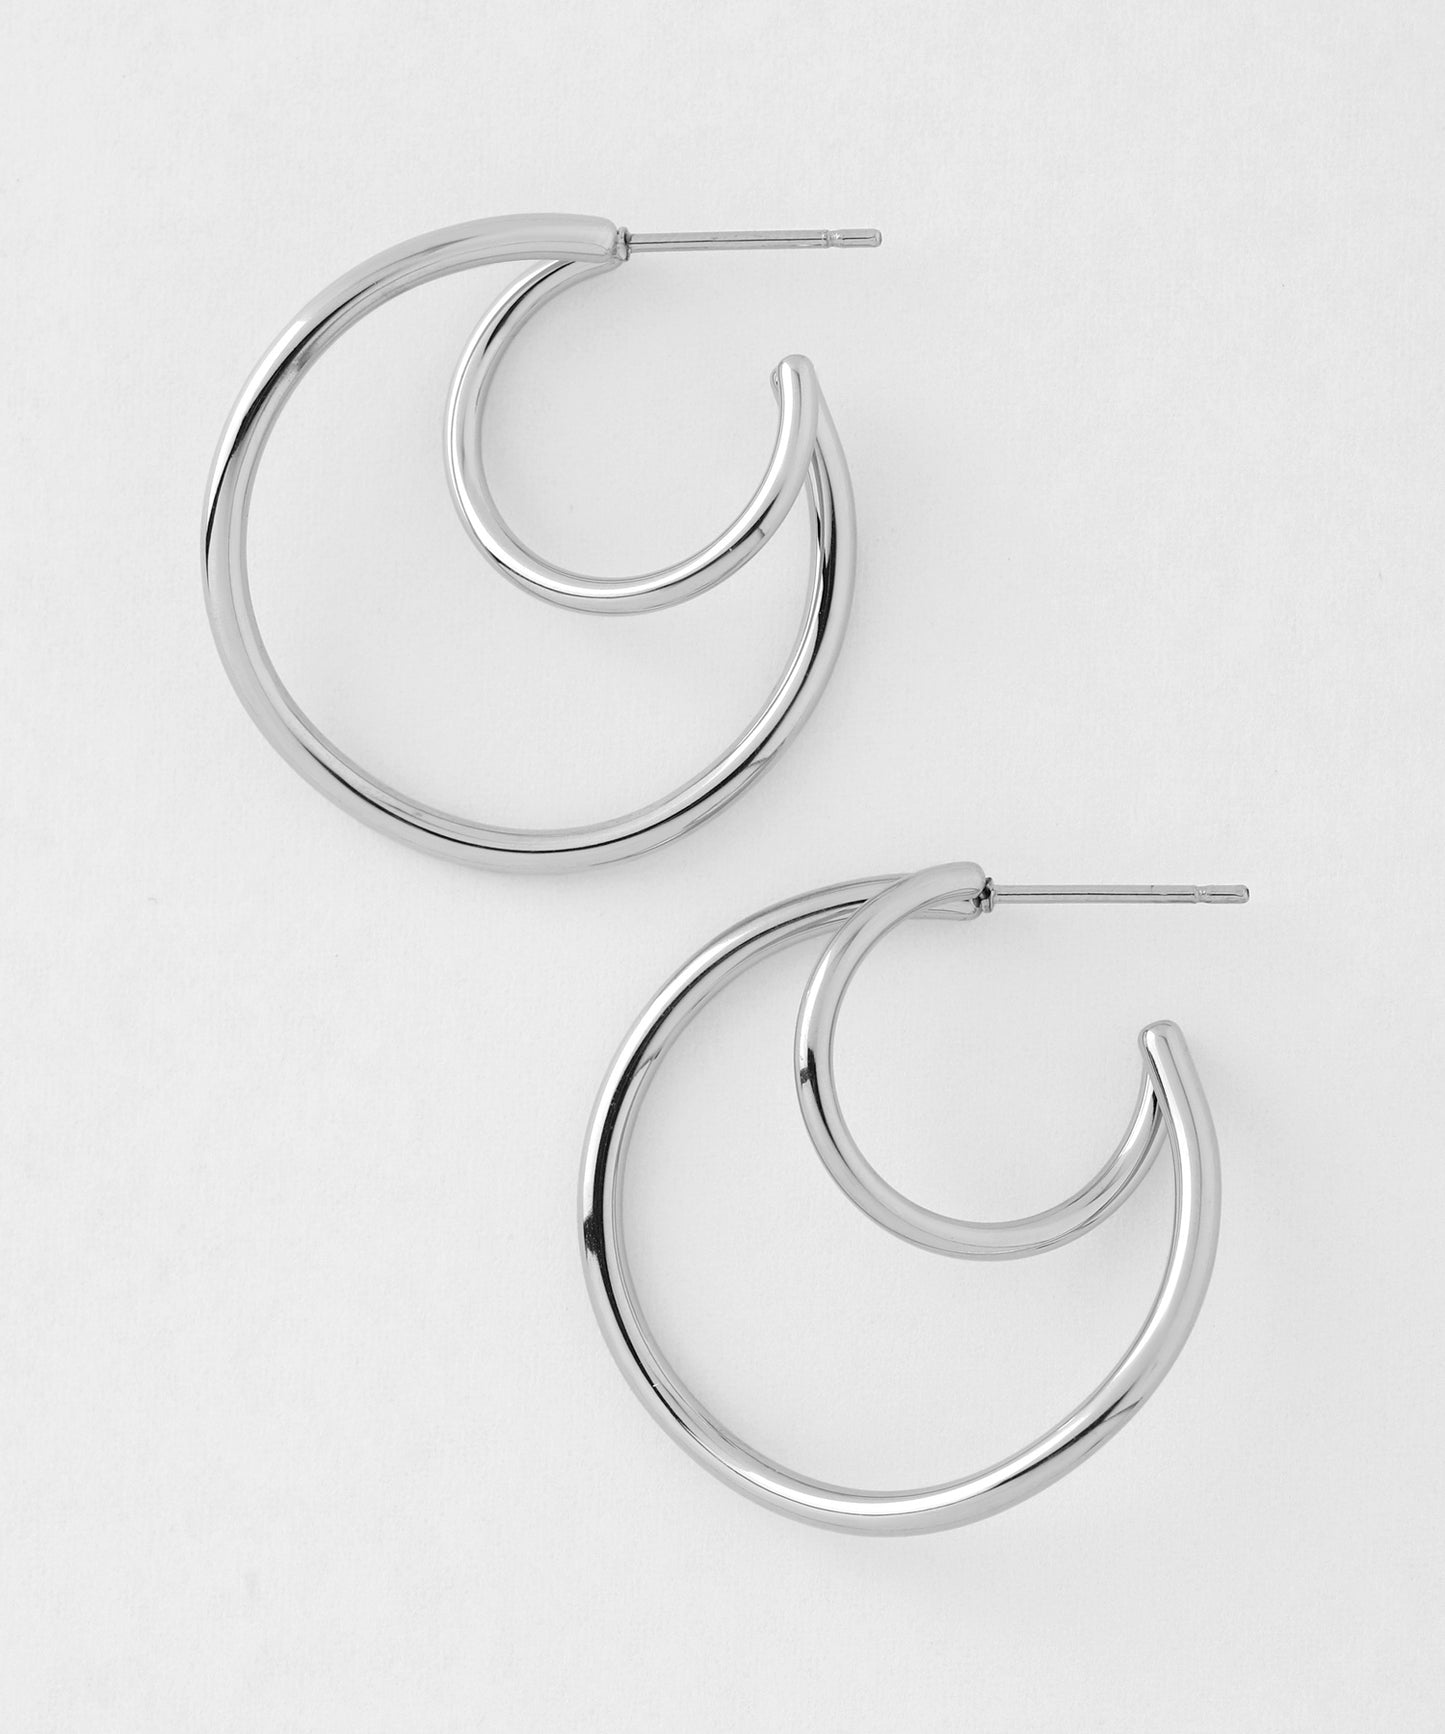 【Stainless Steel IP】Nuance Double Line Hoop Earrings